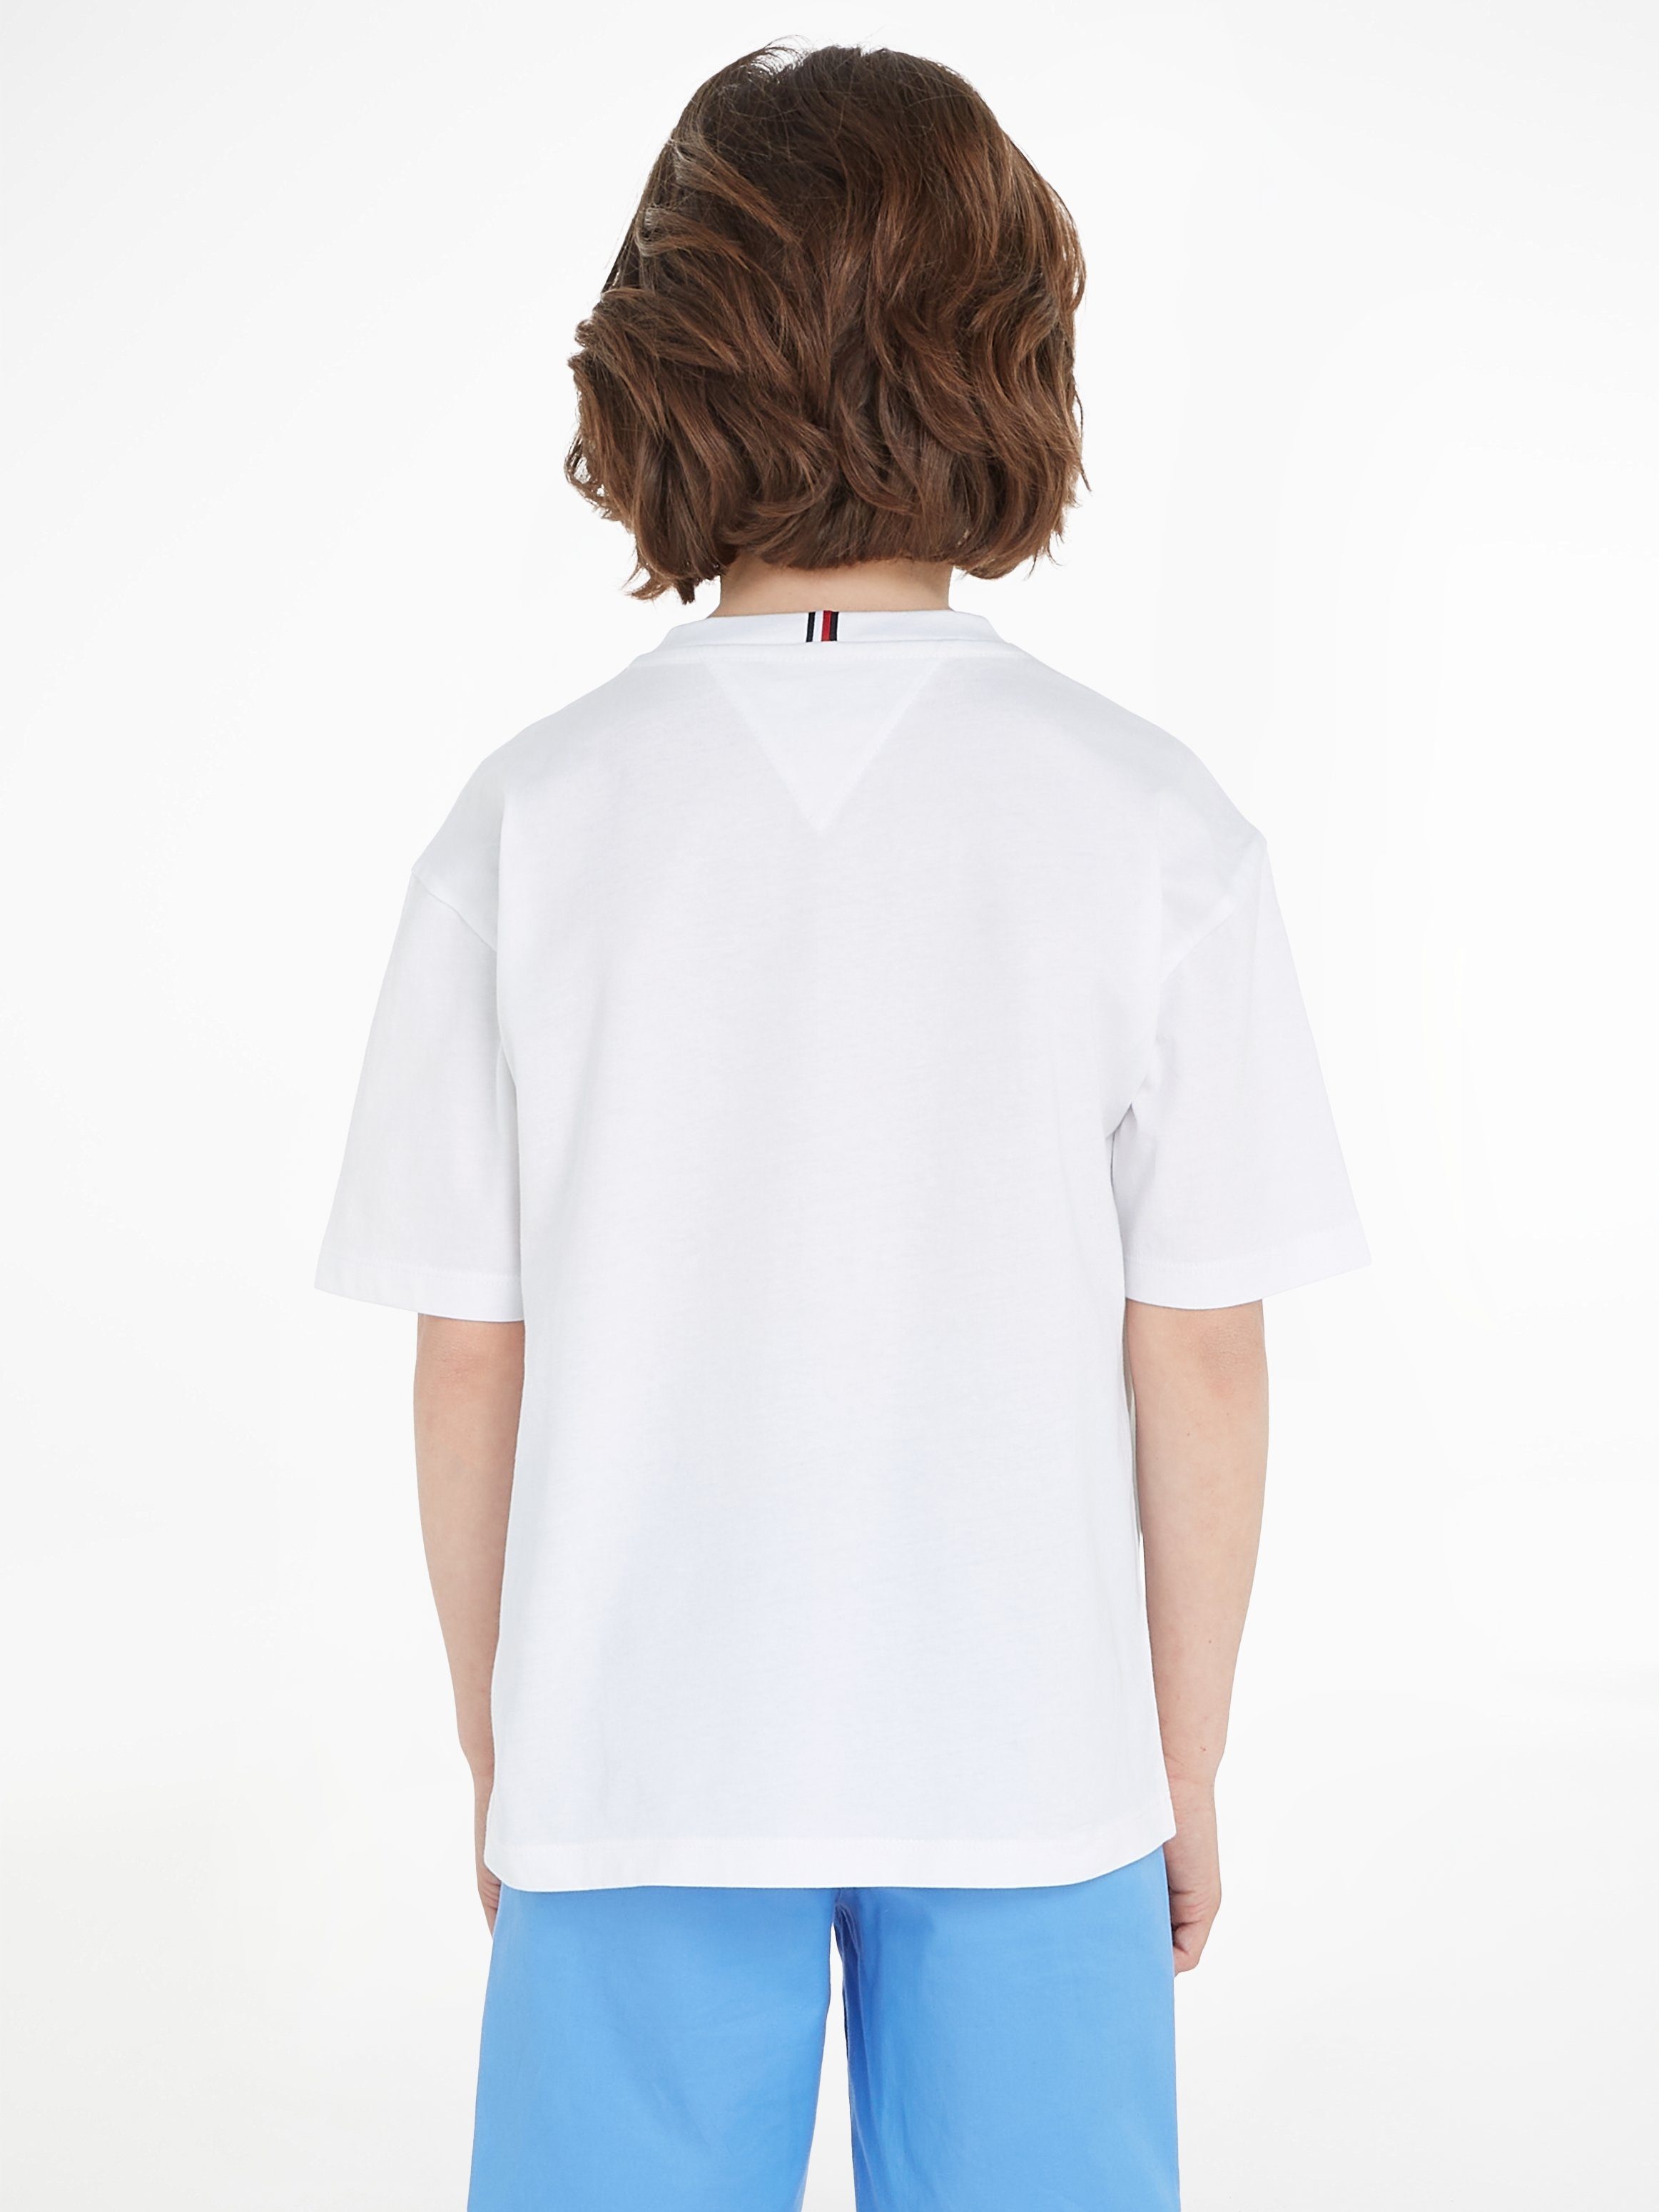 ESSENTIAL T-Shirt 2 S/S bis Jahre Hilfiger Tommy Baby white TEE